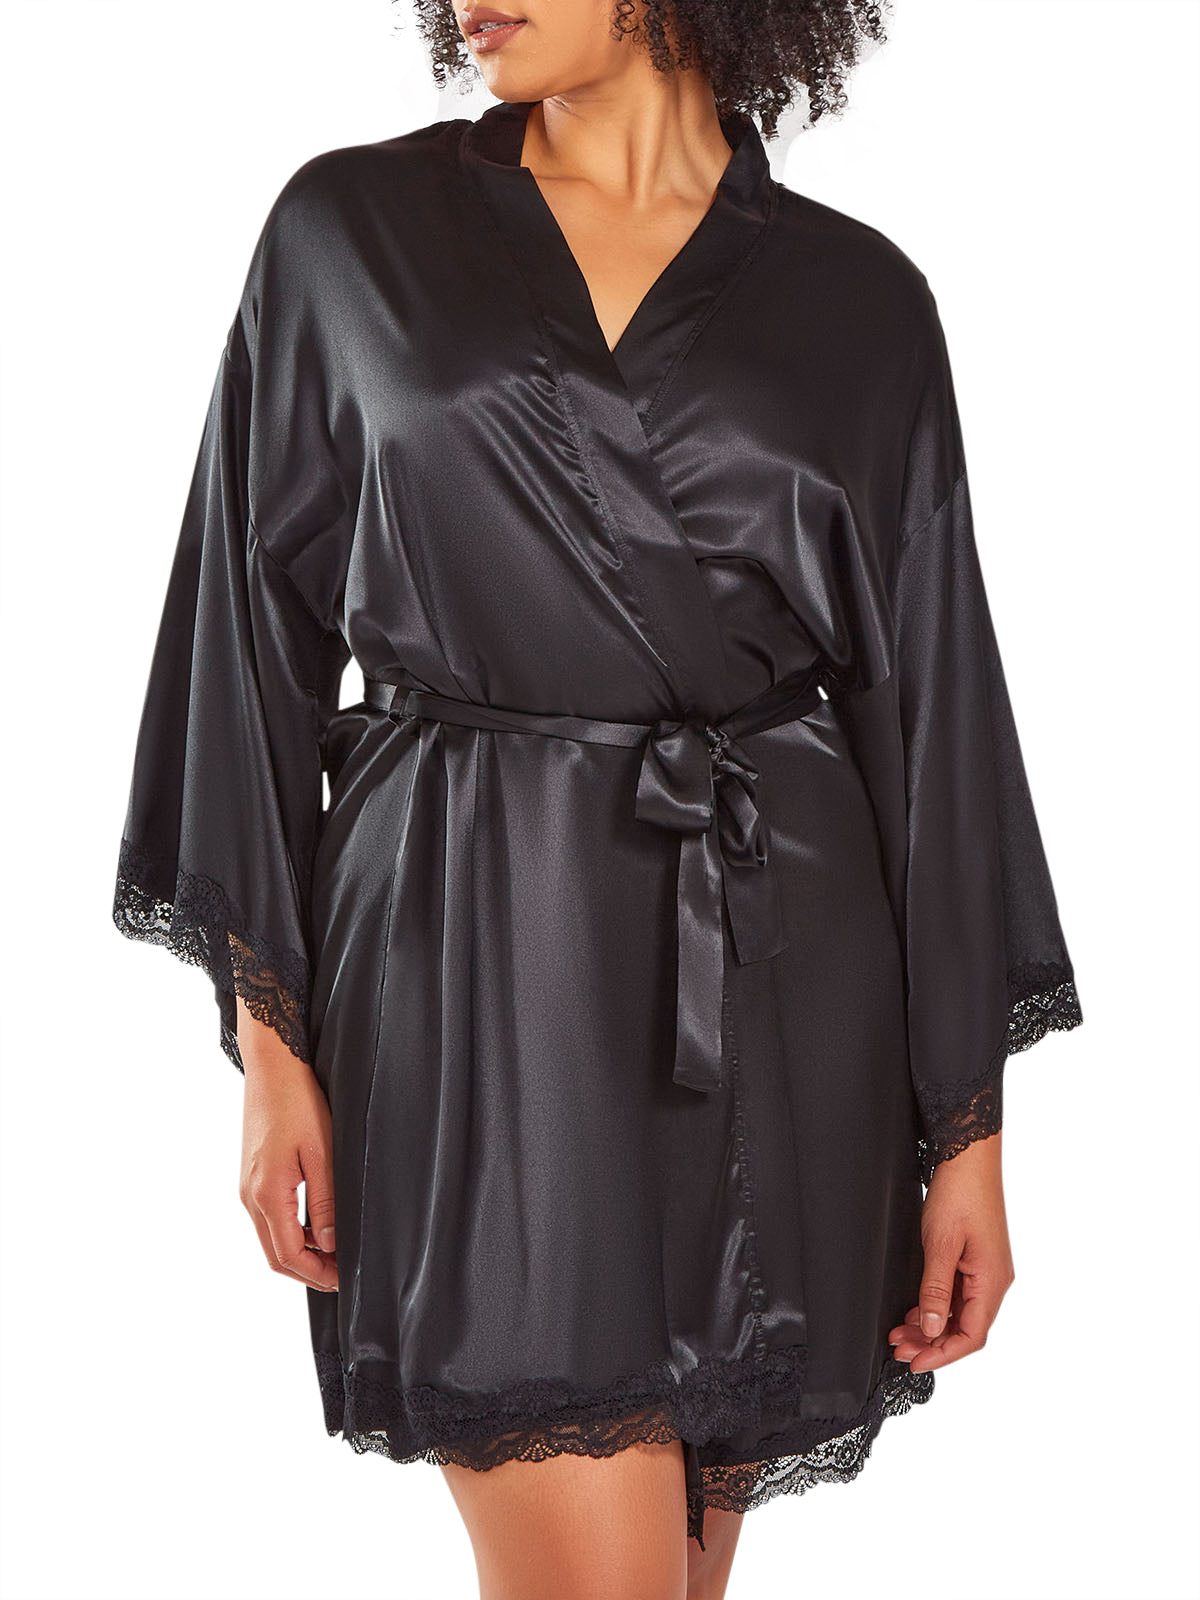 iCollection Robe Leia Plus Size Robe